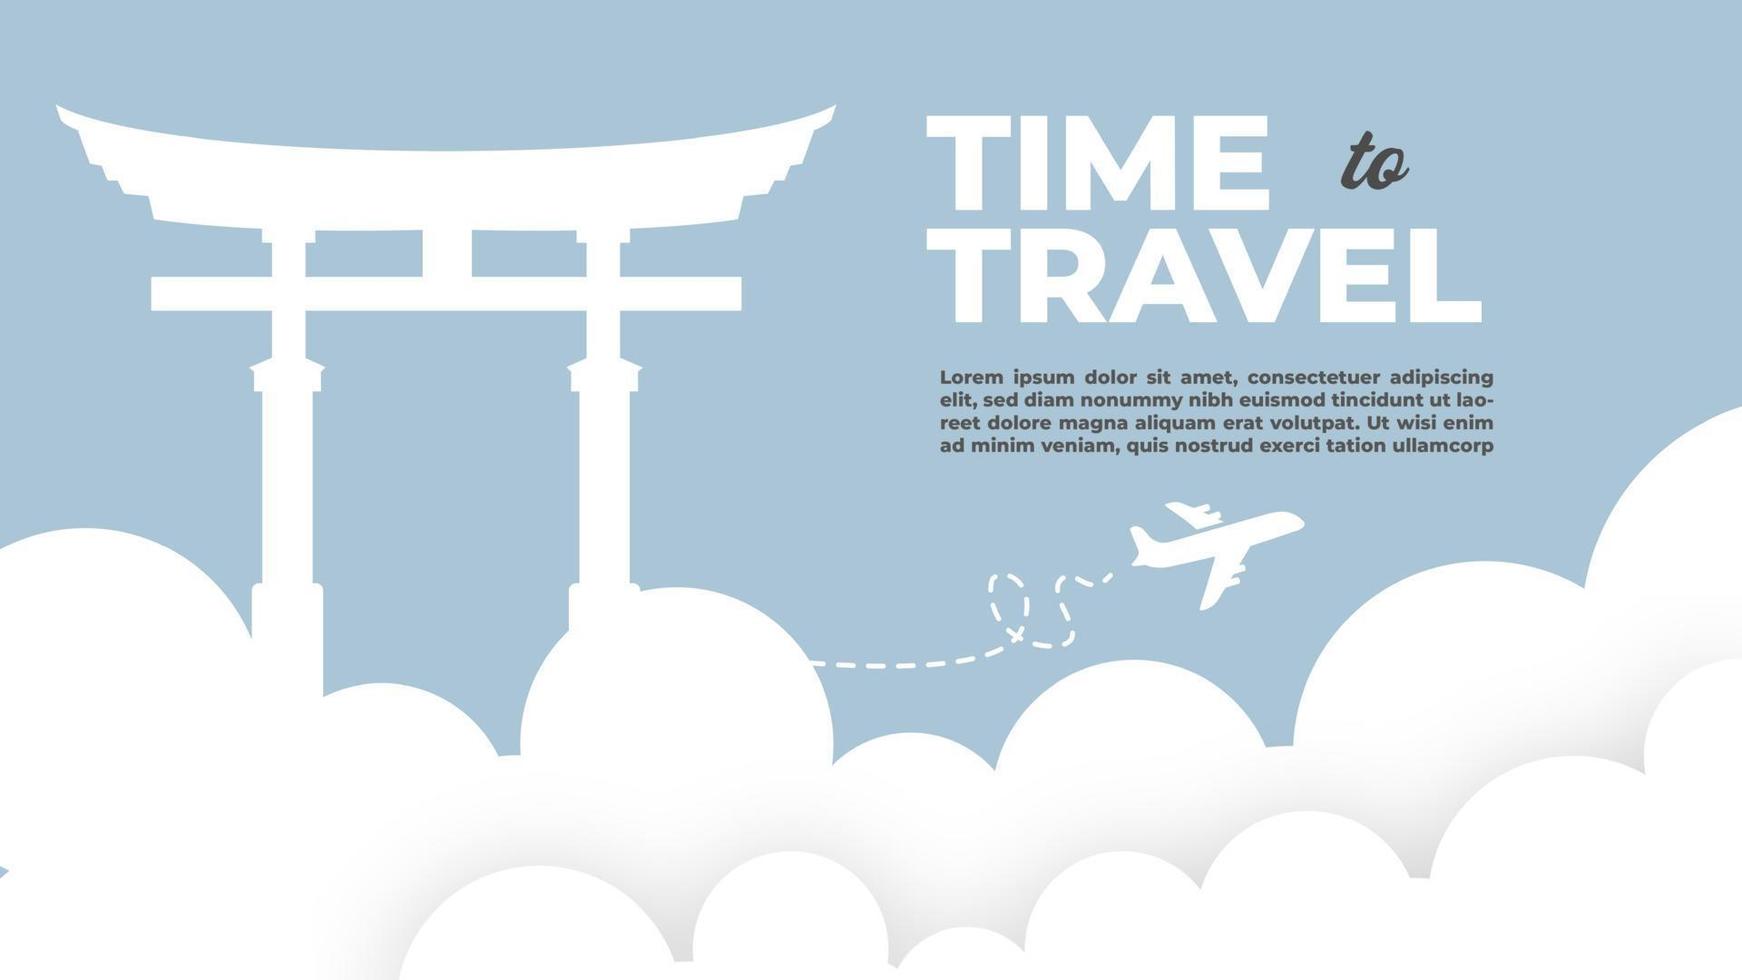 banner con elementos de viaje y turismo. cartel de tiempo para viajar con ilustraciones de vectores de atracciones famosas.